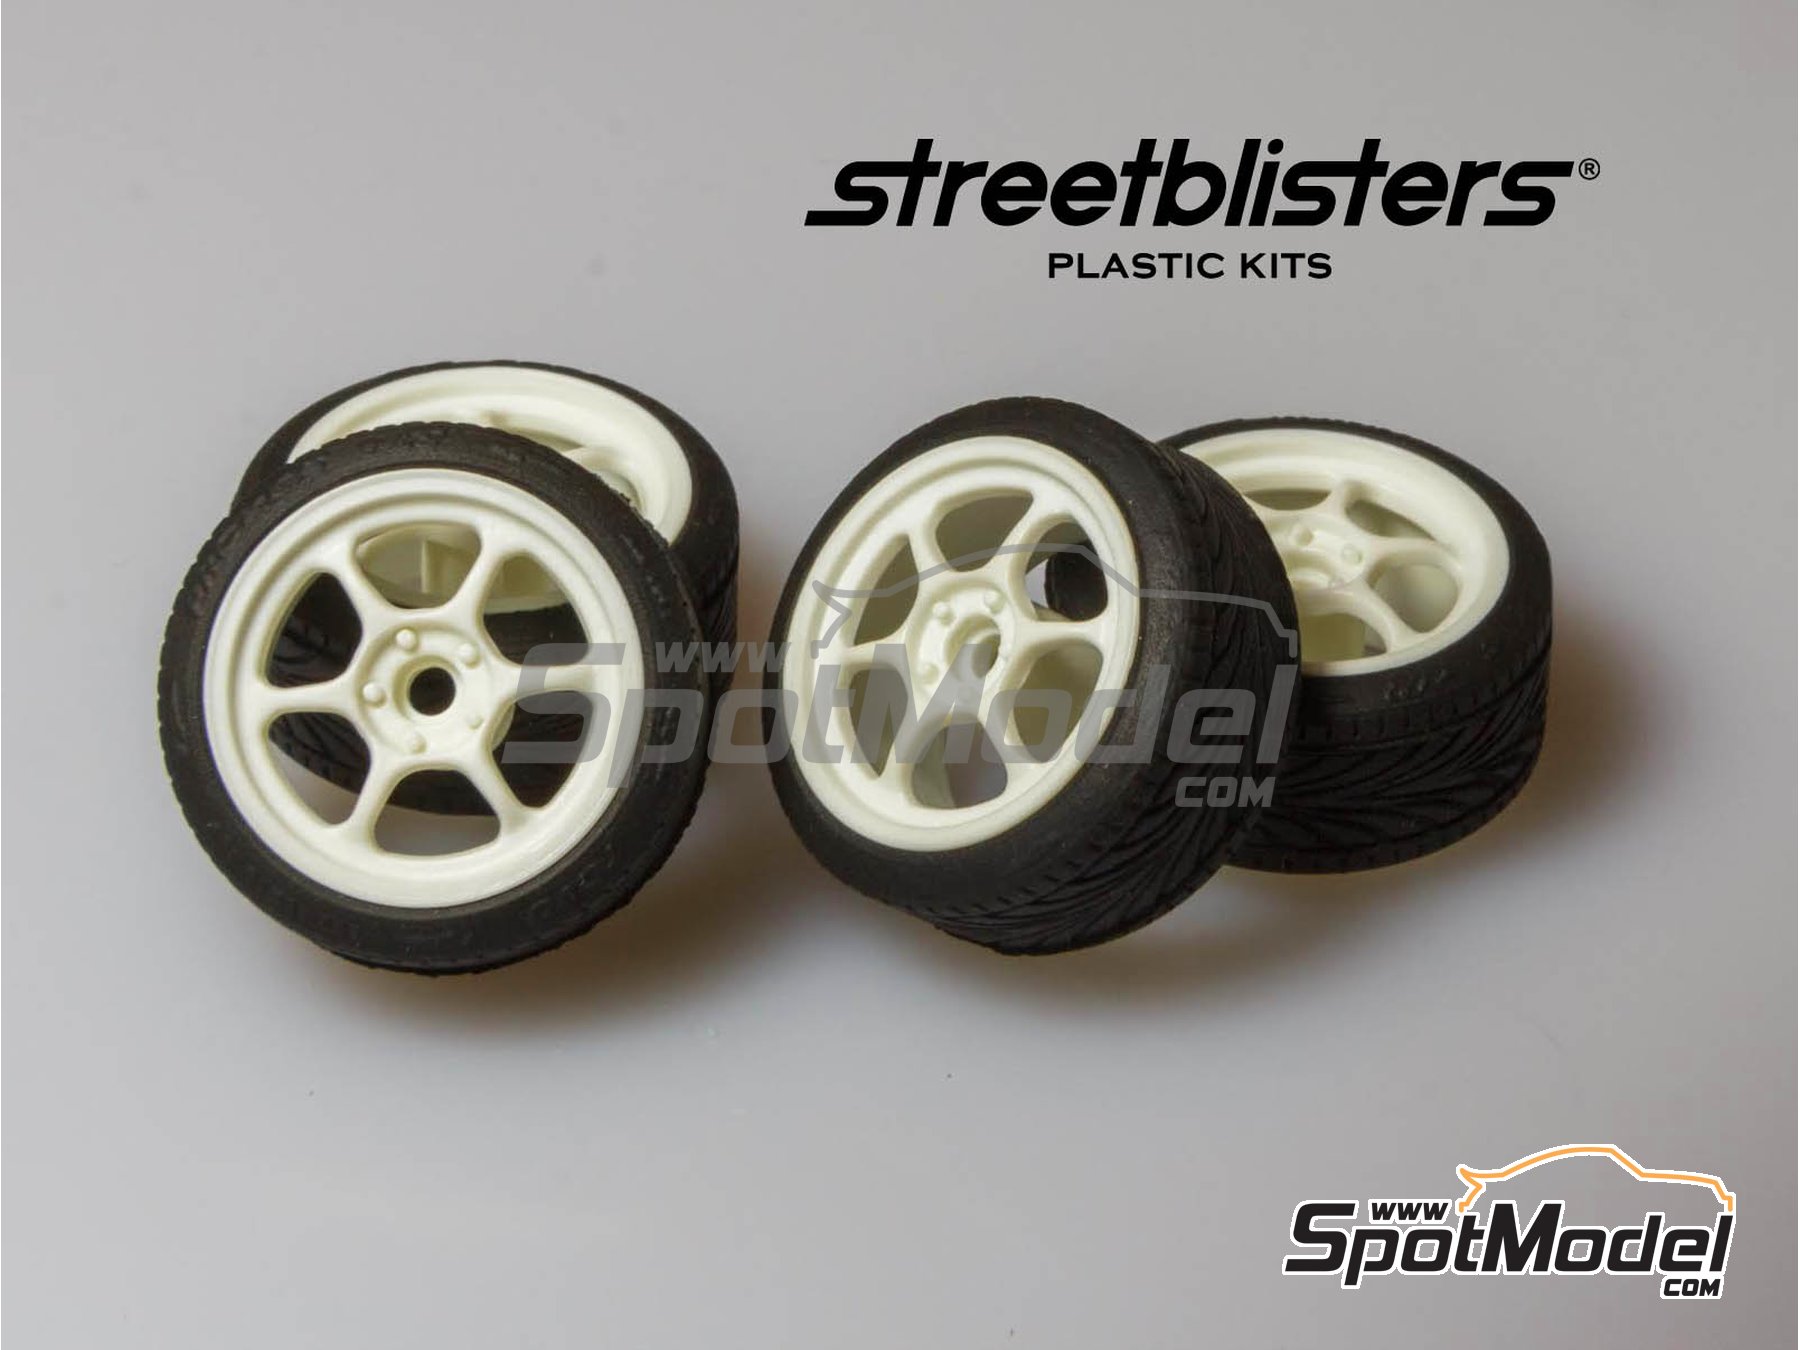 Neumáticos de coche a escala 1:64 Modelo de neumático con estante Mini ruedas de coche Modelo de juguete Serie D 